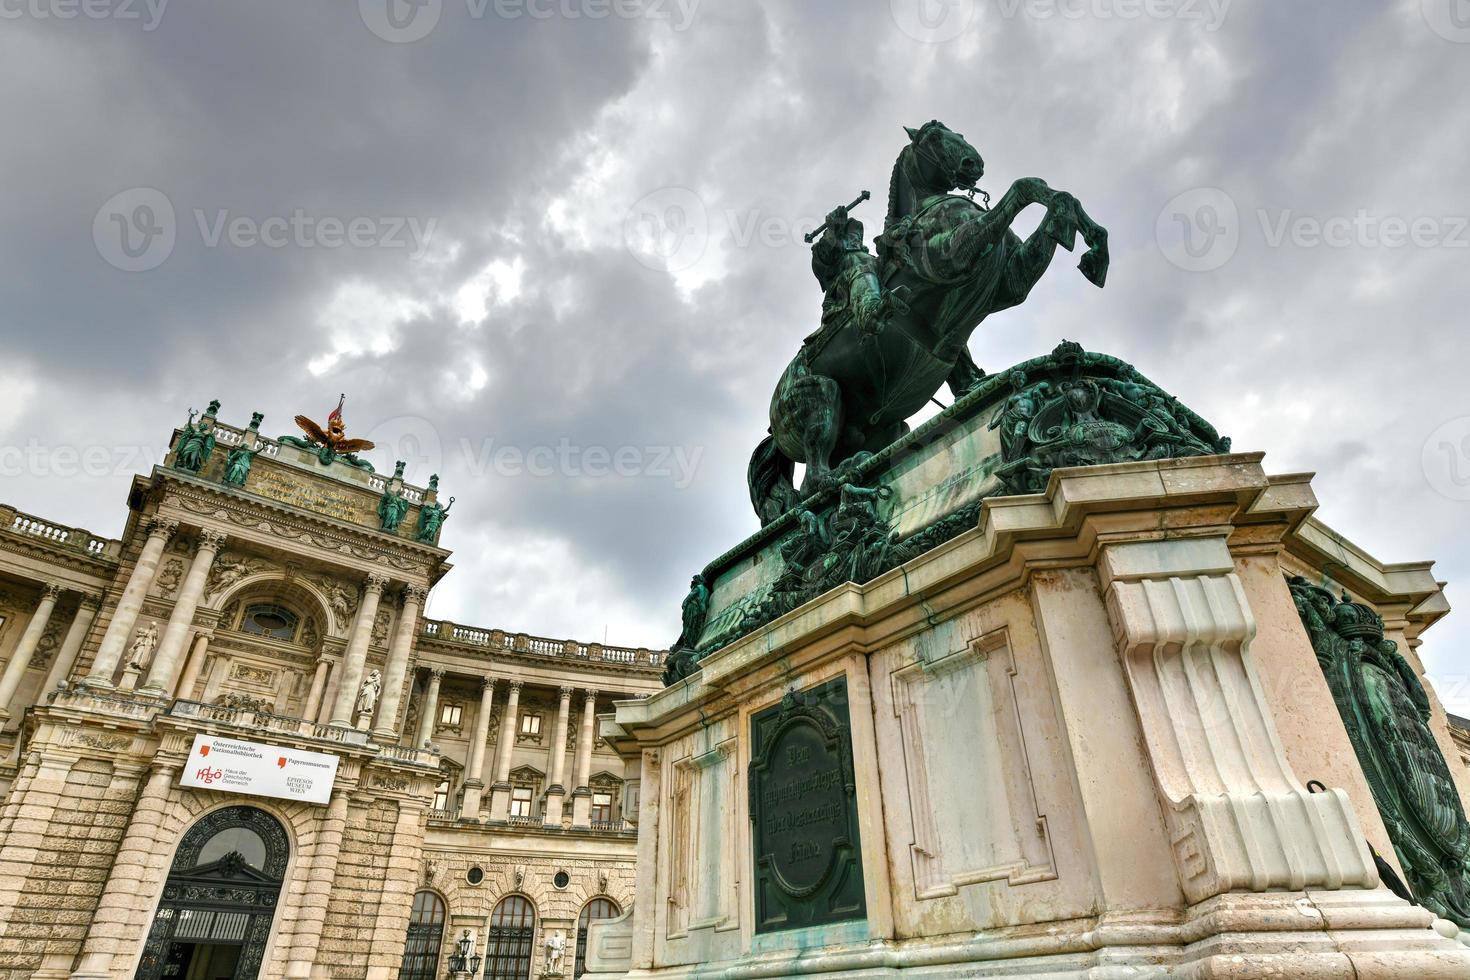 Pferdesport Statue von Prinz Eugen von Wirsing durch das hofburg im Wien, Österreich foto